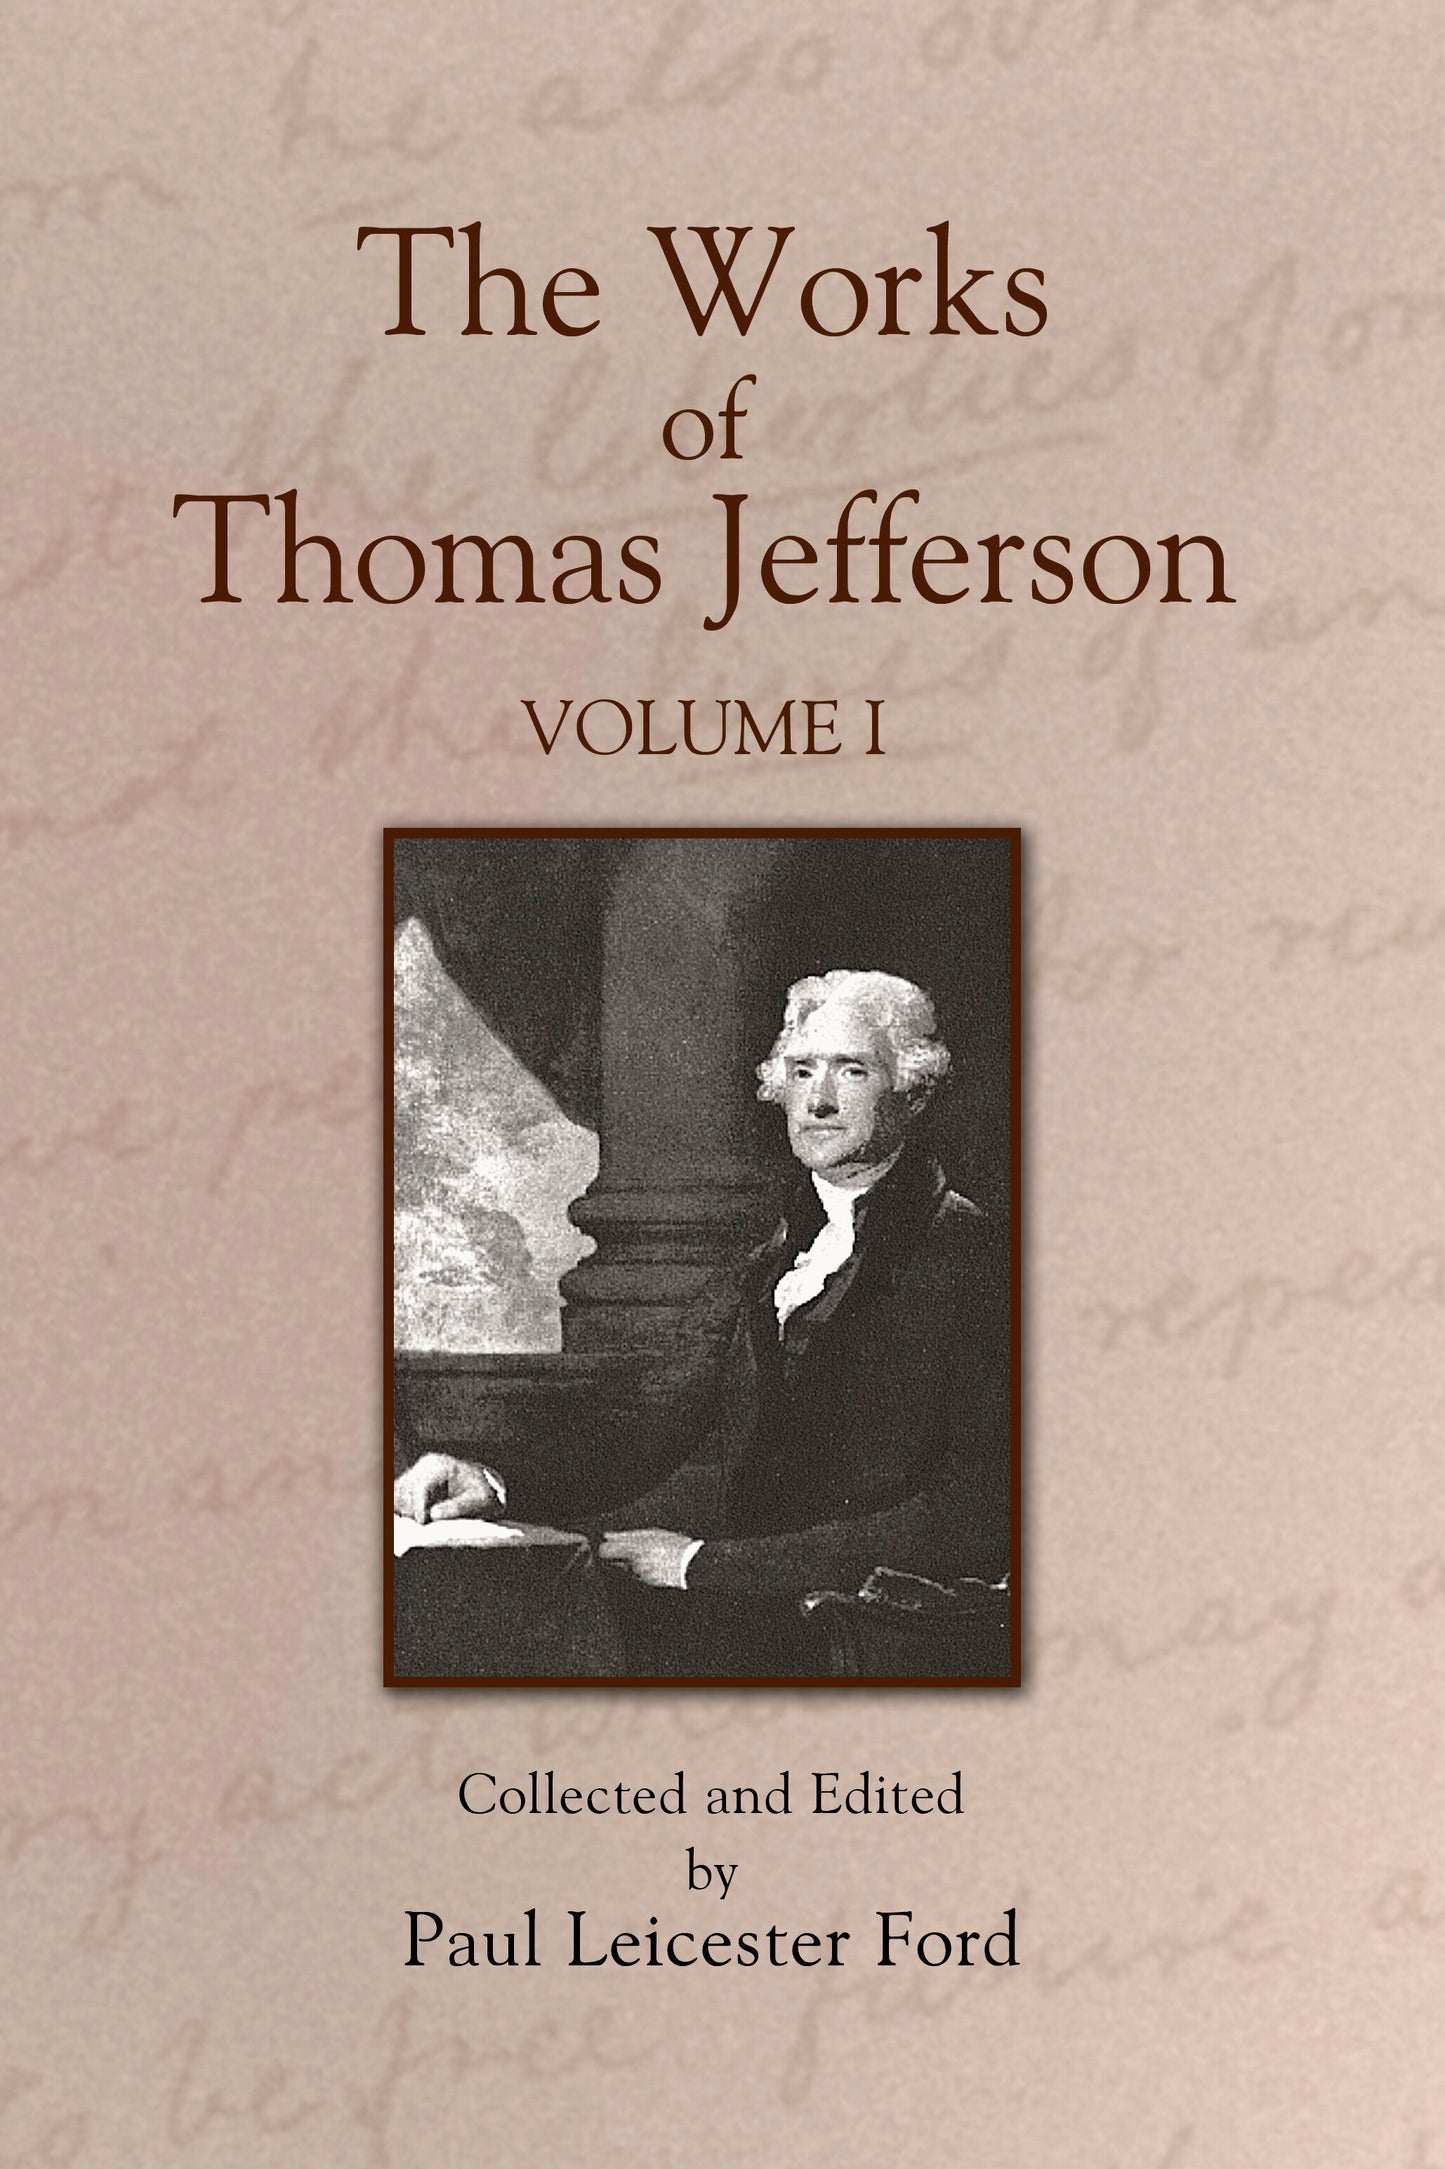 The Works of Thomas Jefferson: Volume I